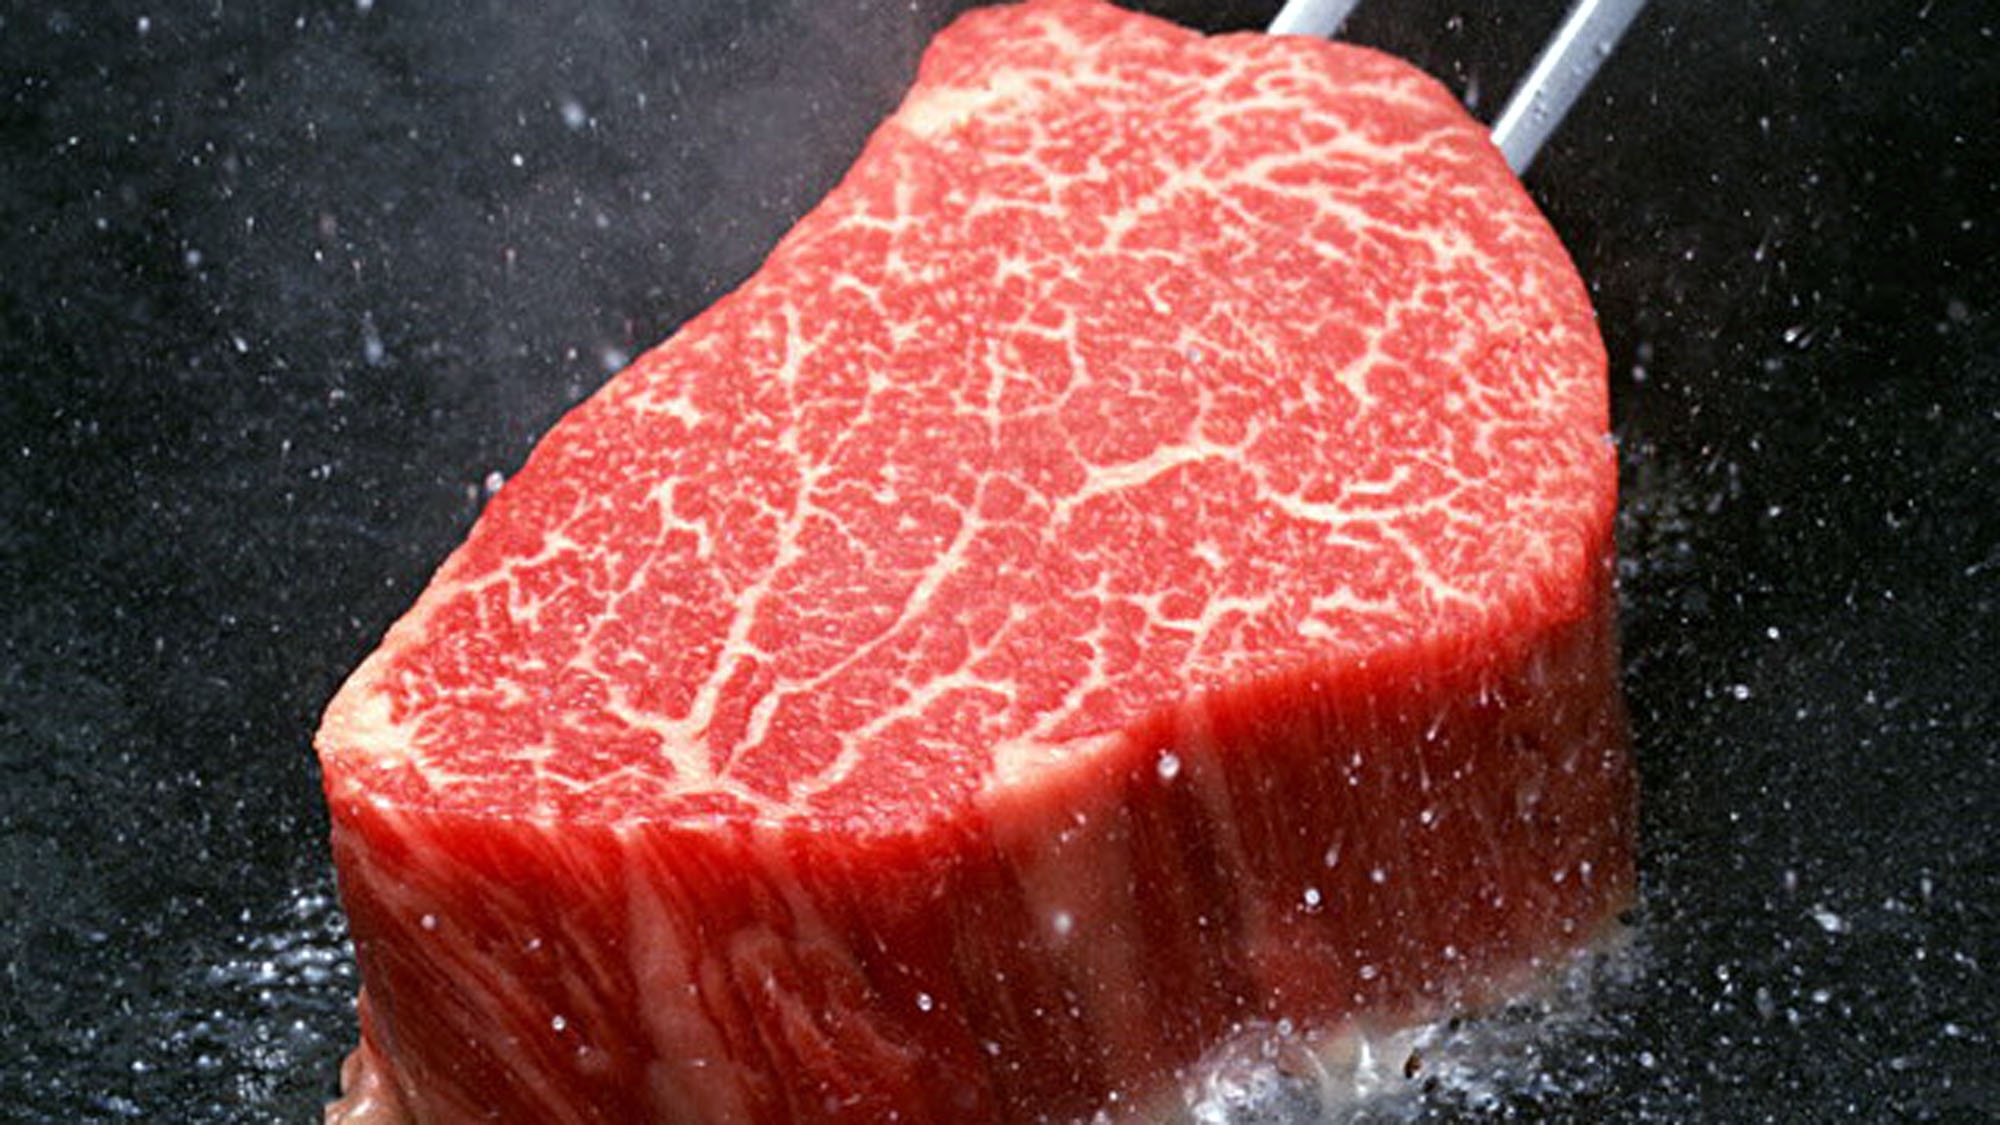 【あか牛堪能♪】阿蘇名産『あか牛』ステーキをフルコース料理と共に…♪２食プラン